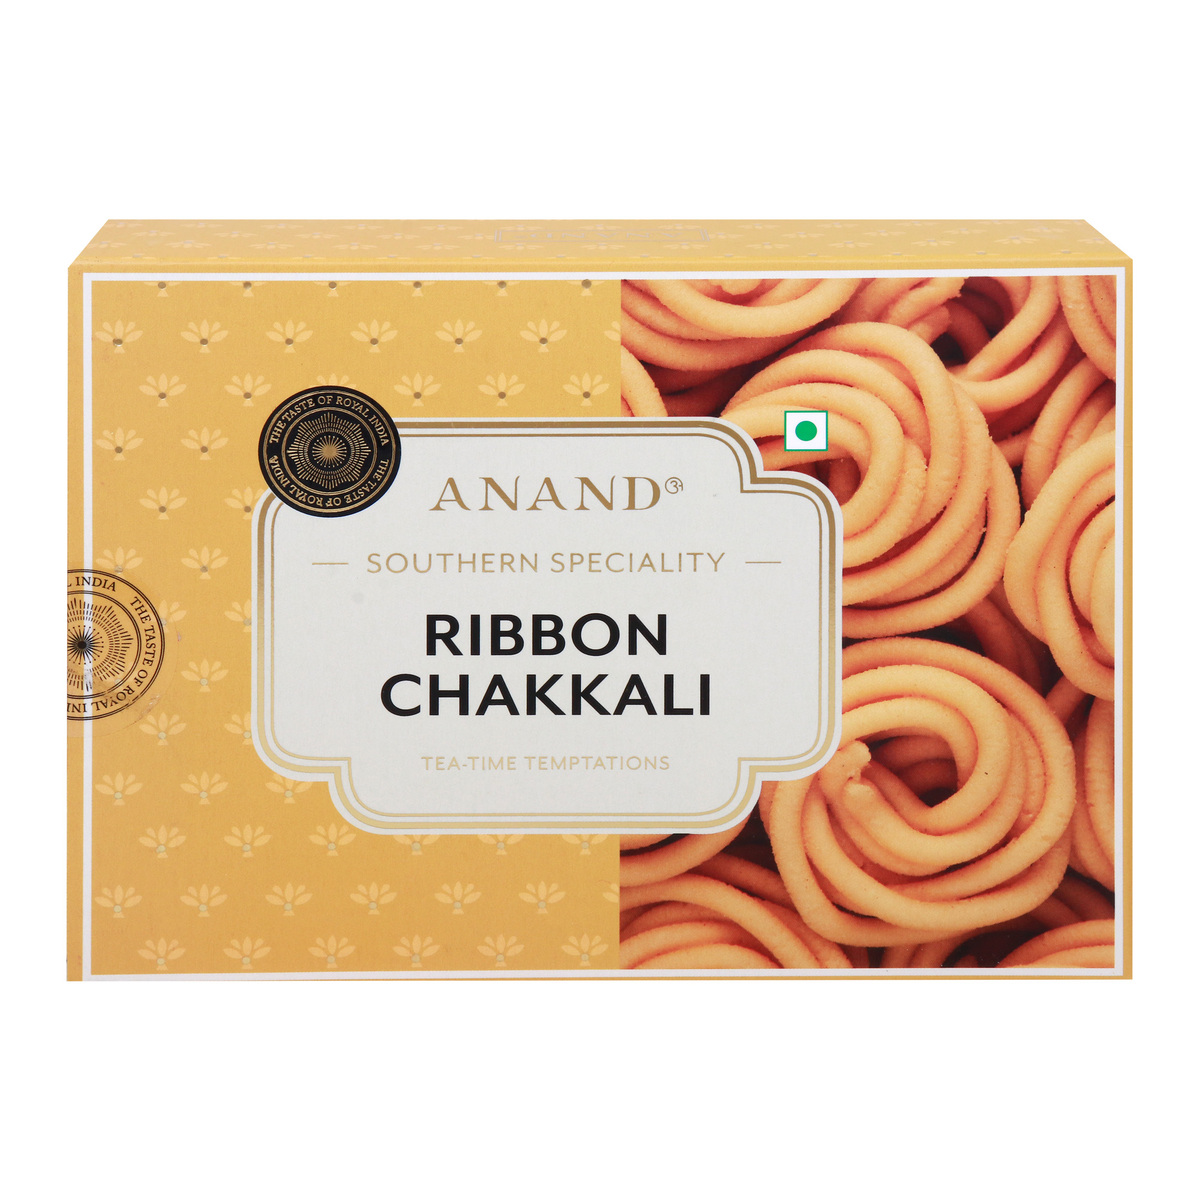 Anand Ribbon Chakkali, 200 g